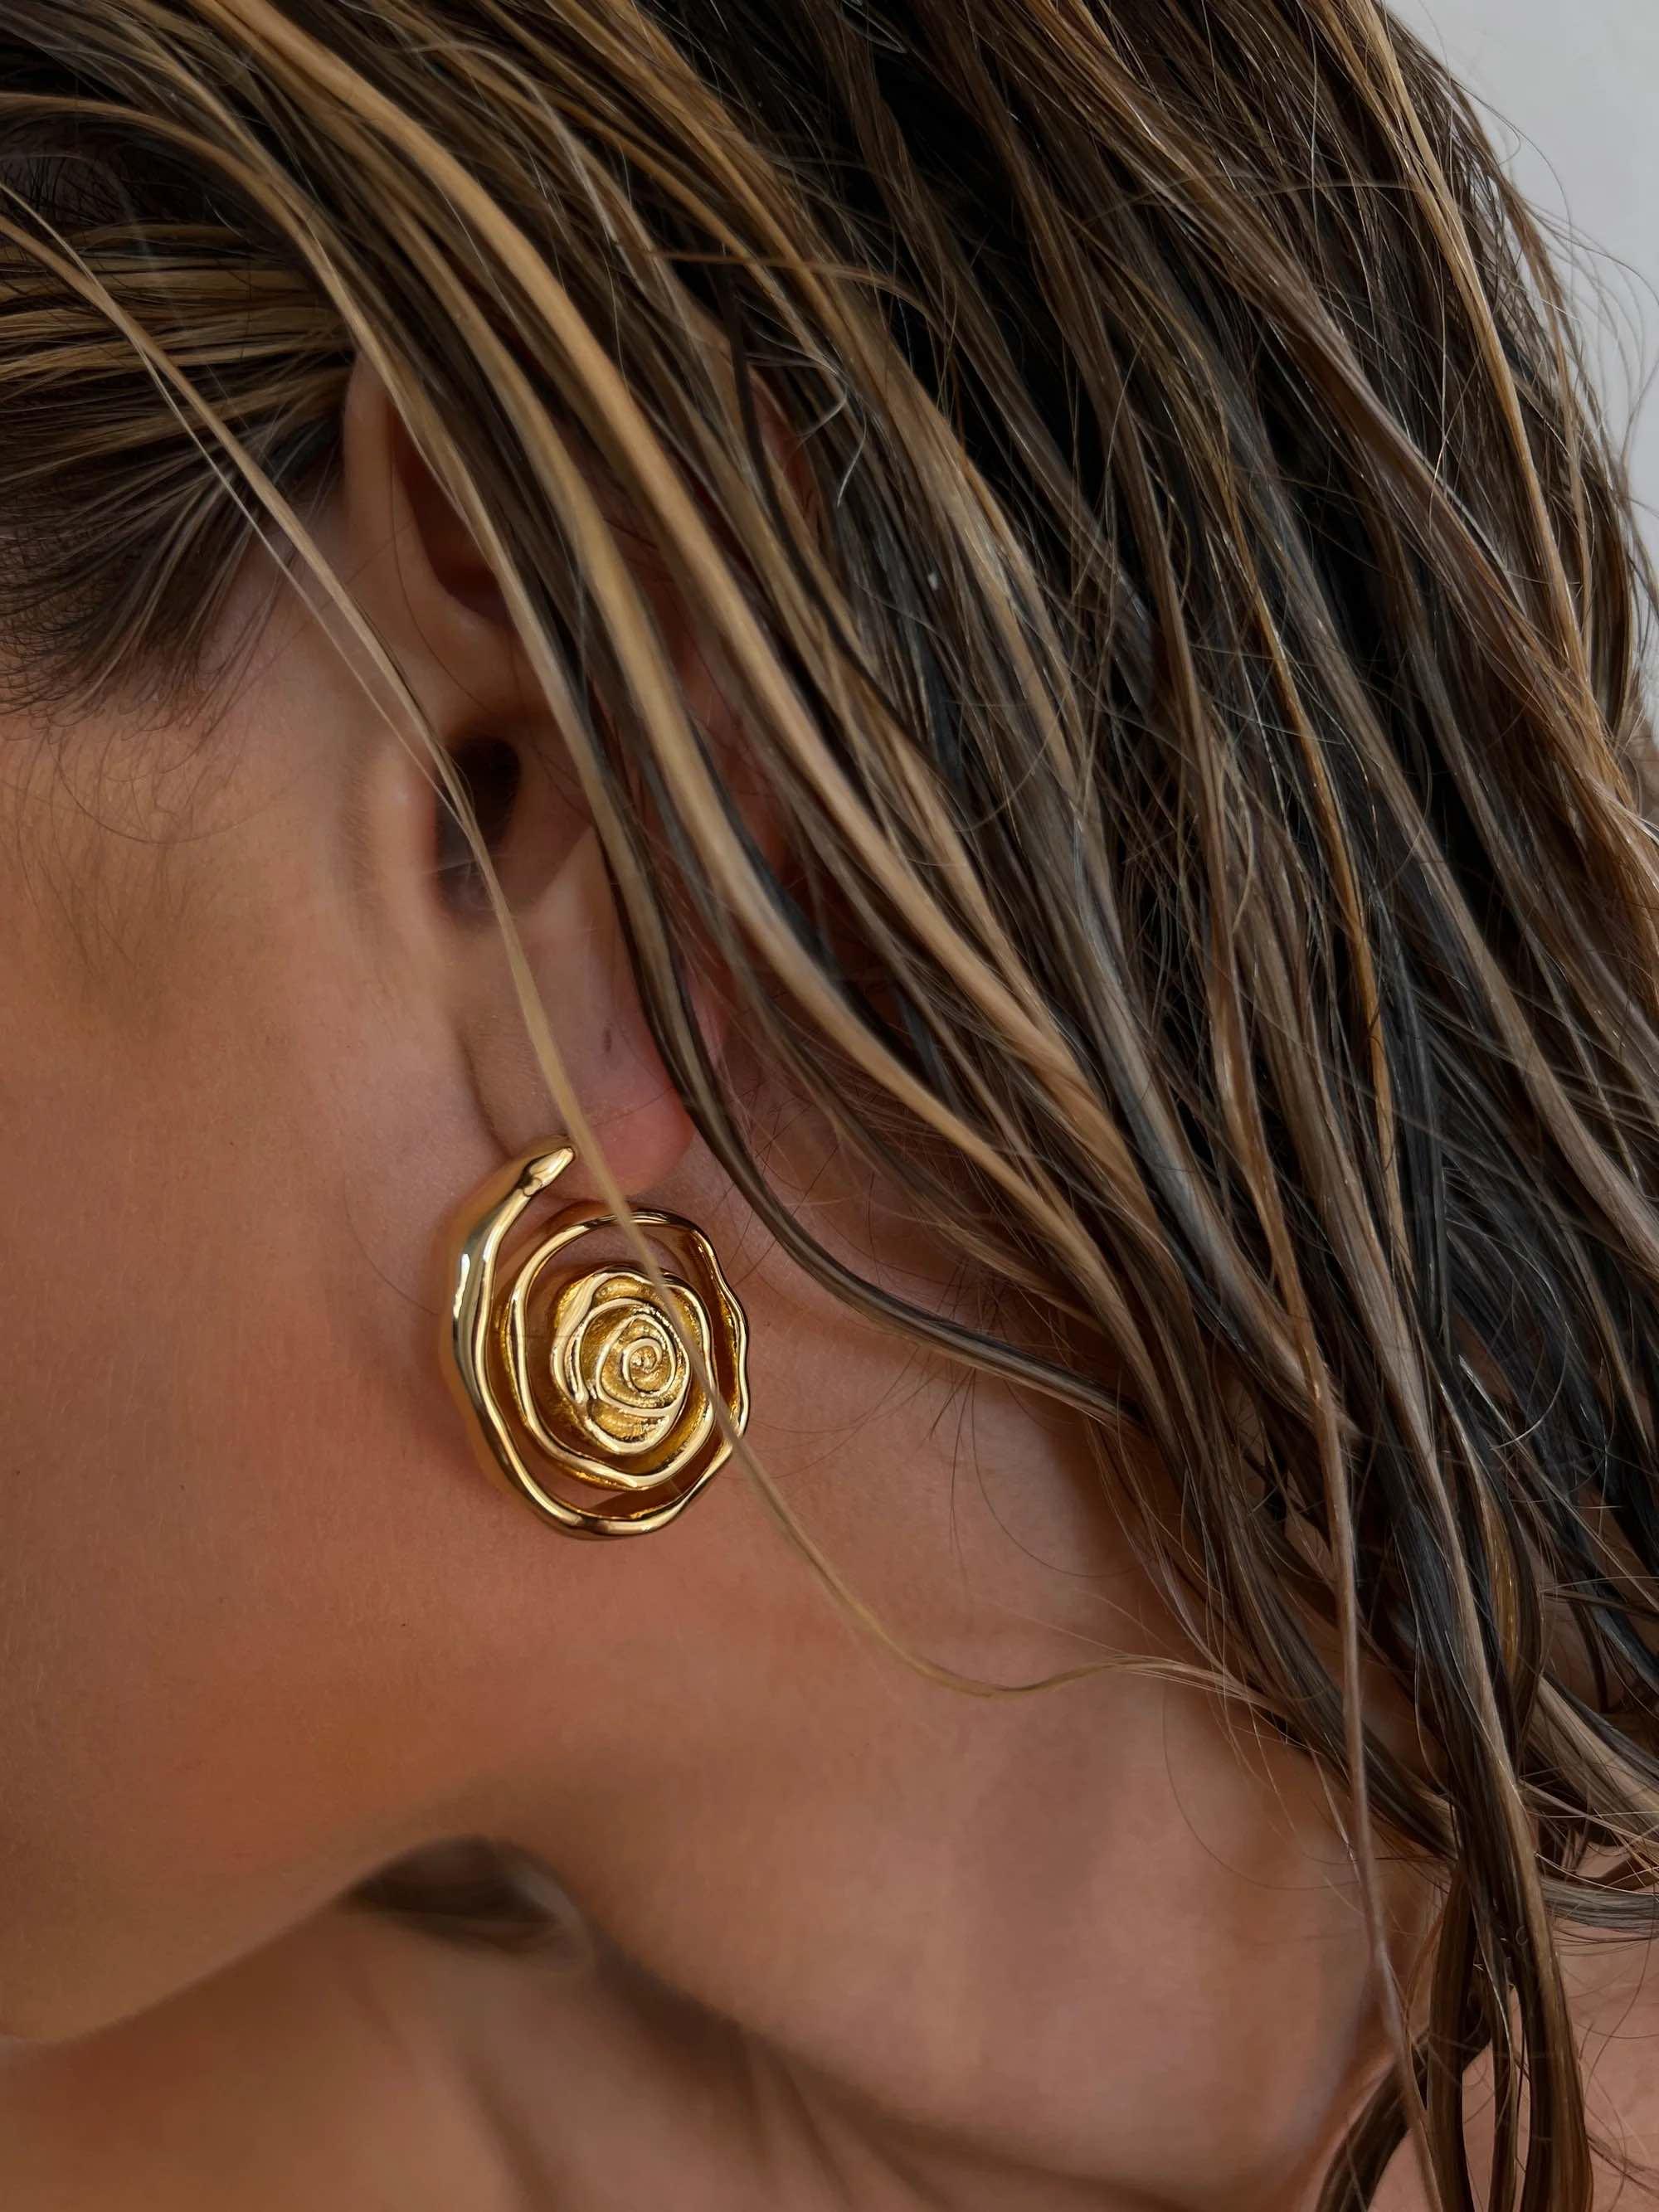 Rosette Coil Earrings - Gold - Flutter